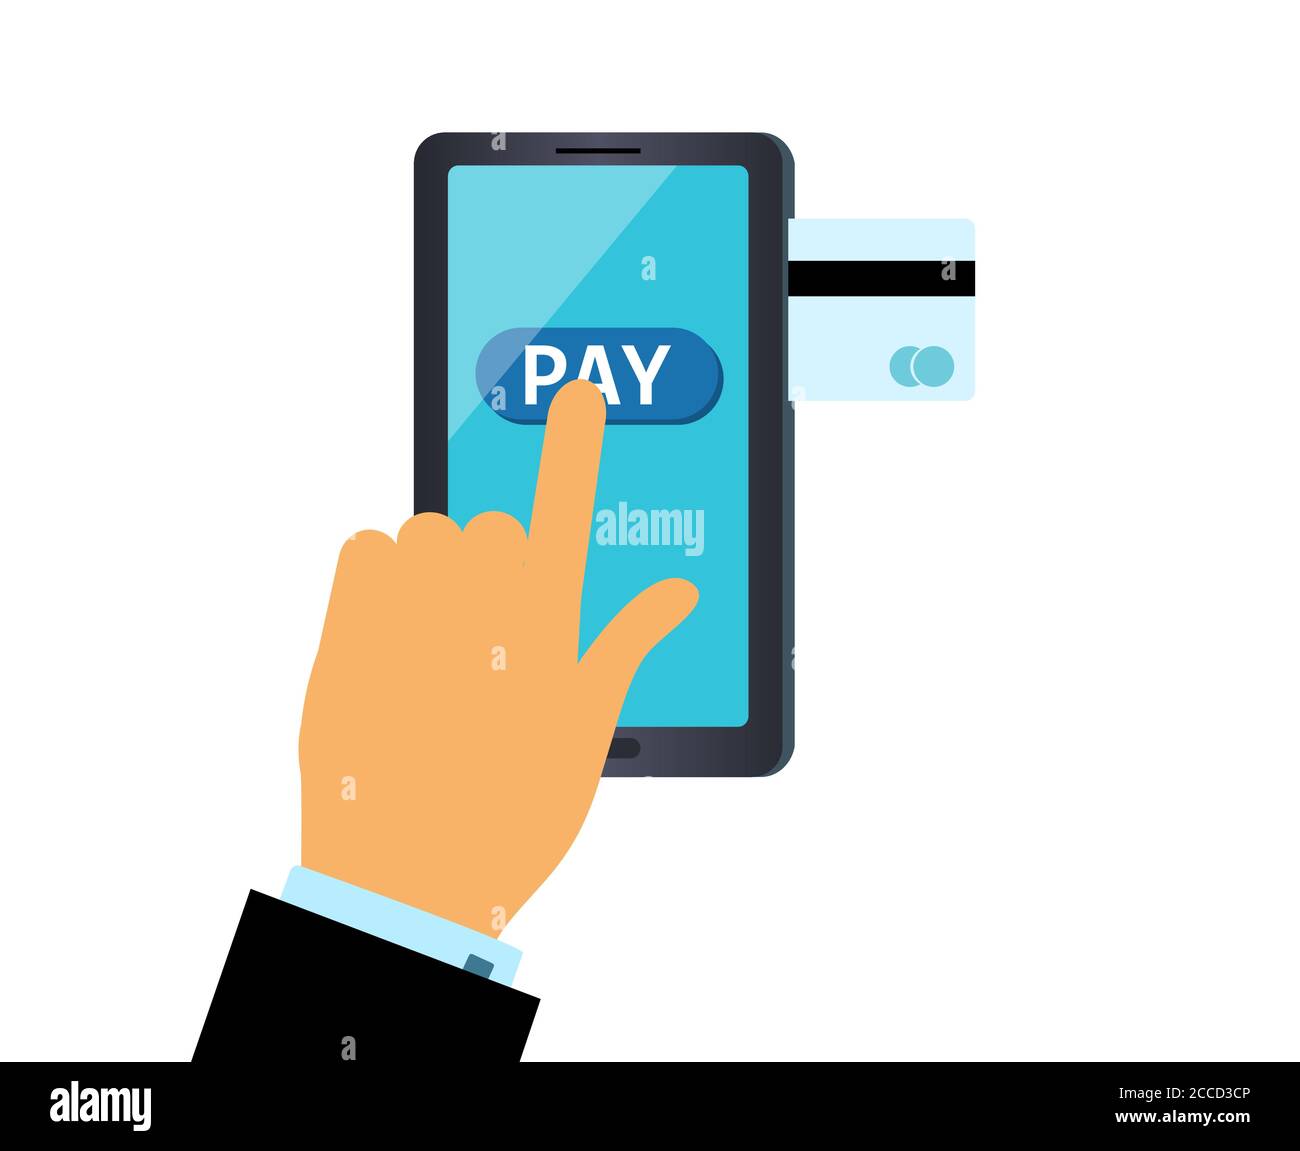 Online-Zahlung. Die Hand drückt die Pay-Taste auf dem Smartphone. Das Konzept der Online-Zahlung für eine Bestellung per Bankkarte. Vektorgrafik im flachen Stil. Stock Vektor